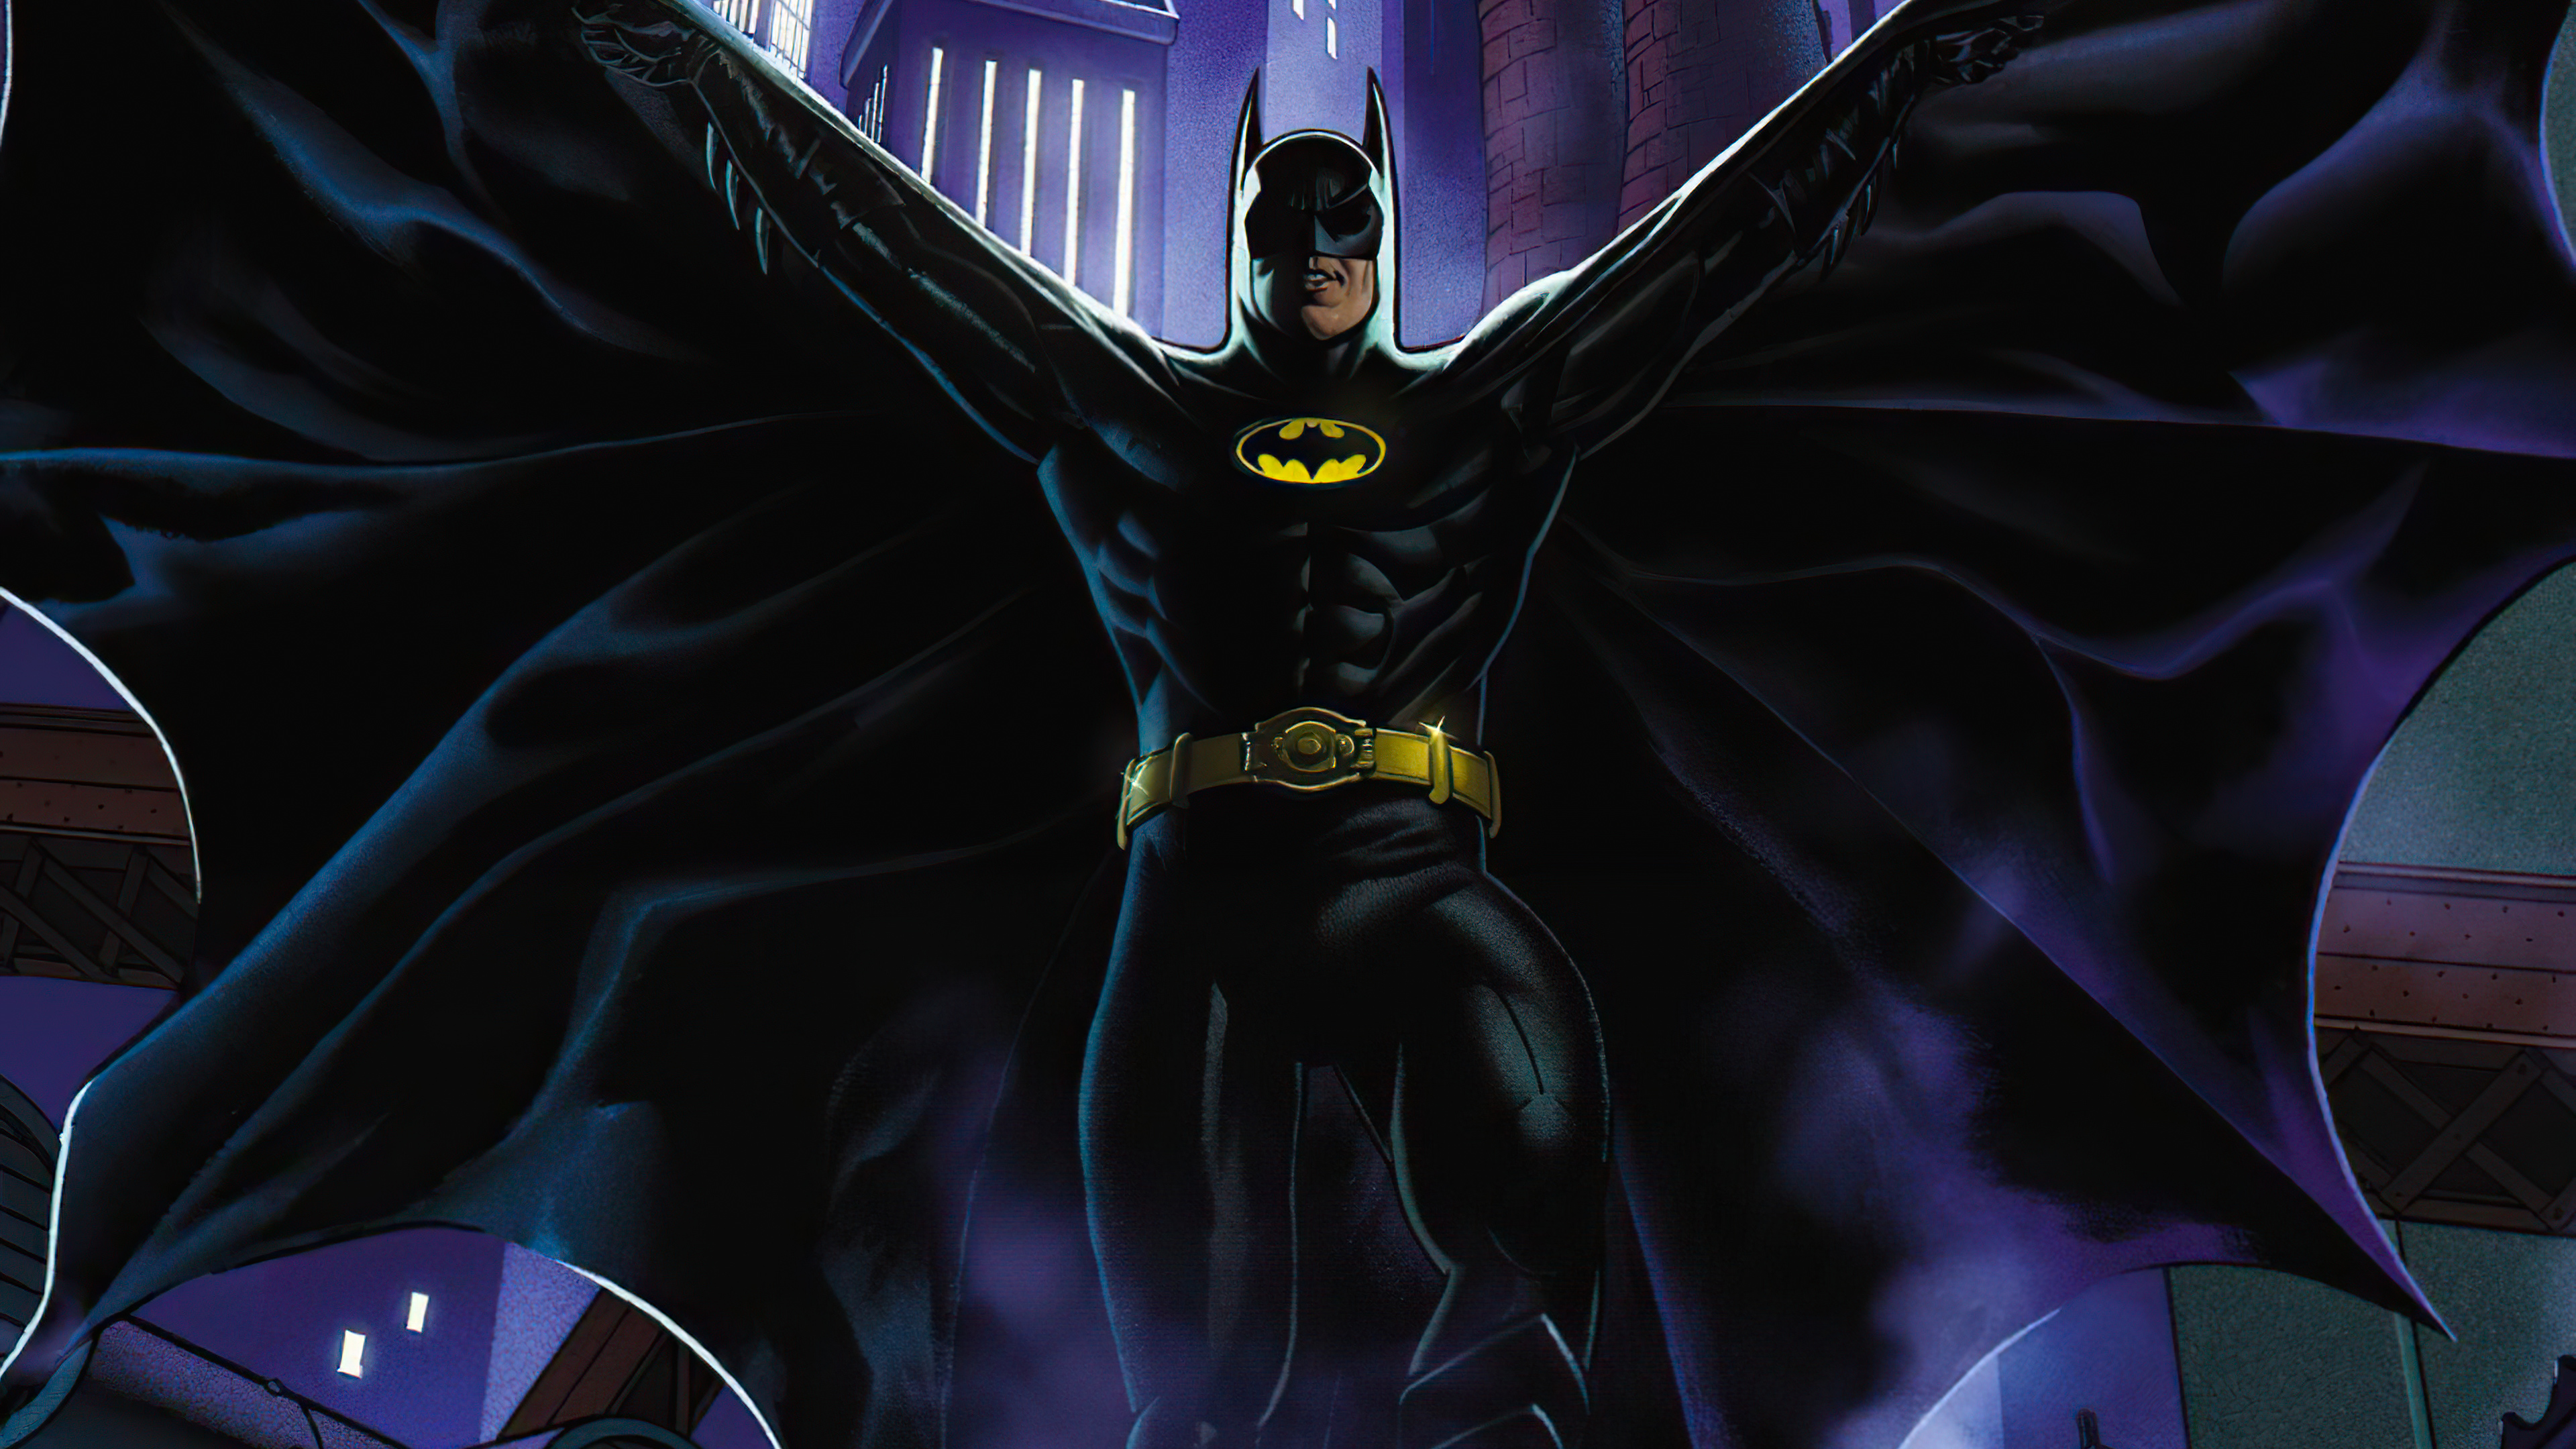 Descarga gratuita de fondo de pantalla para móvil de Historietas, The Batman, Dc Comics, Bruce Wayne.